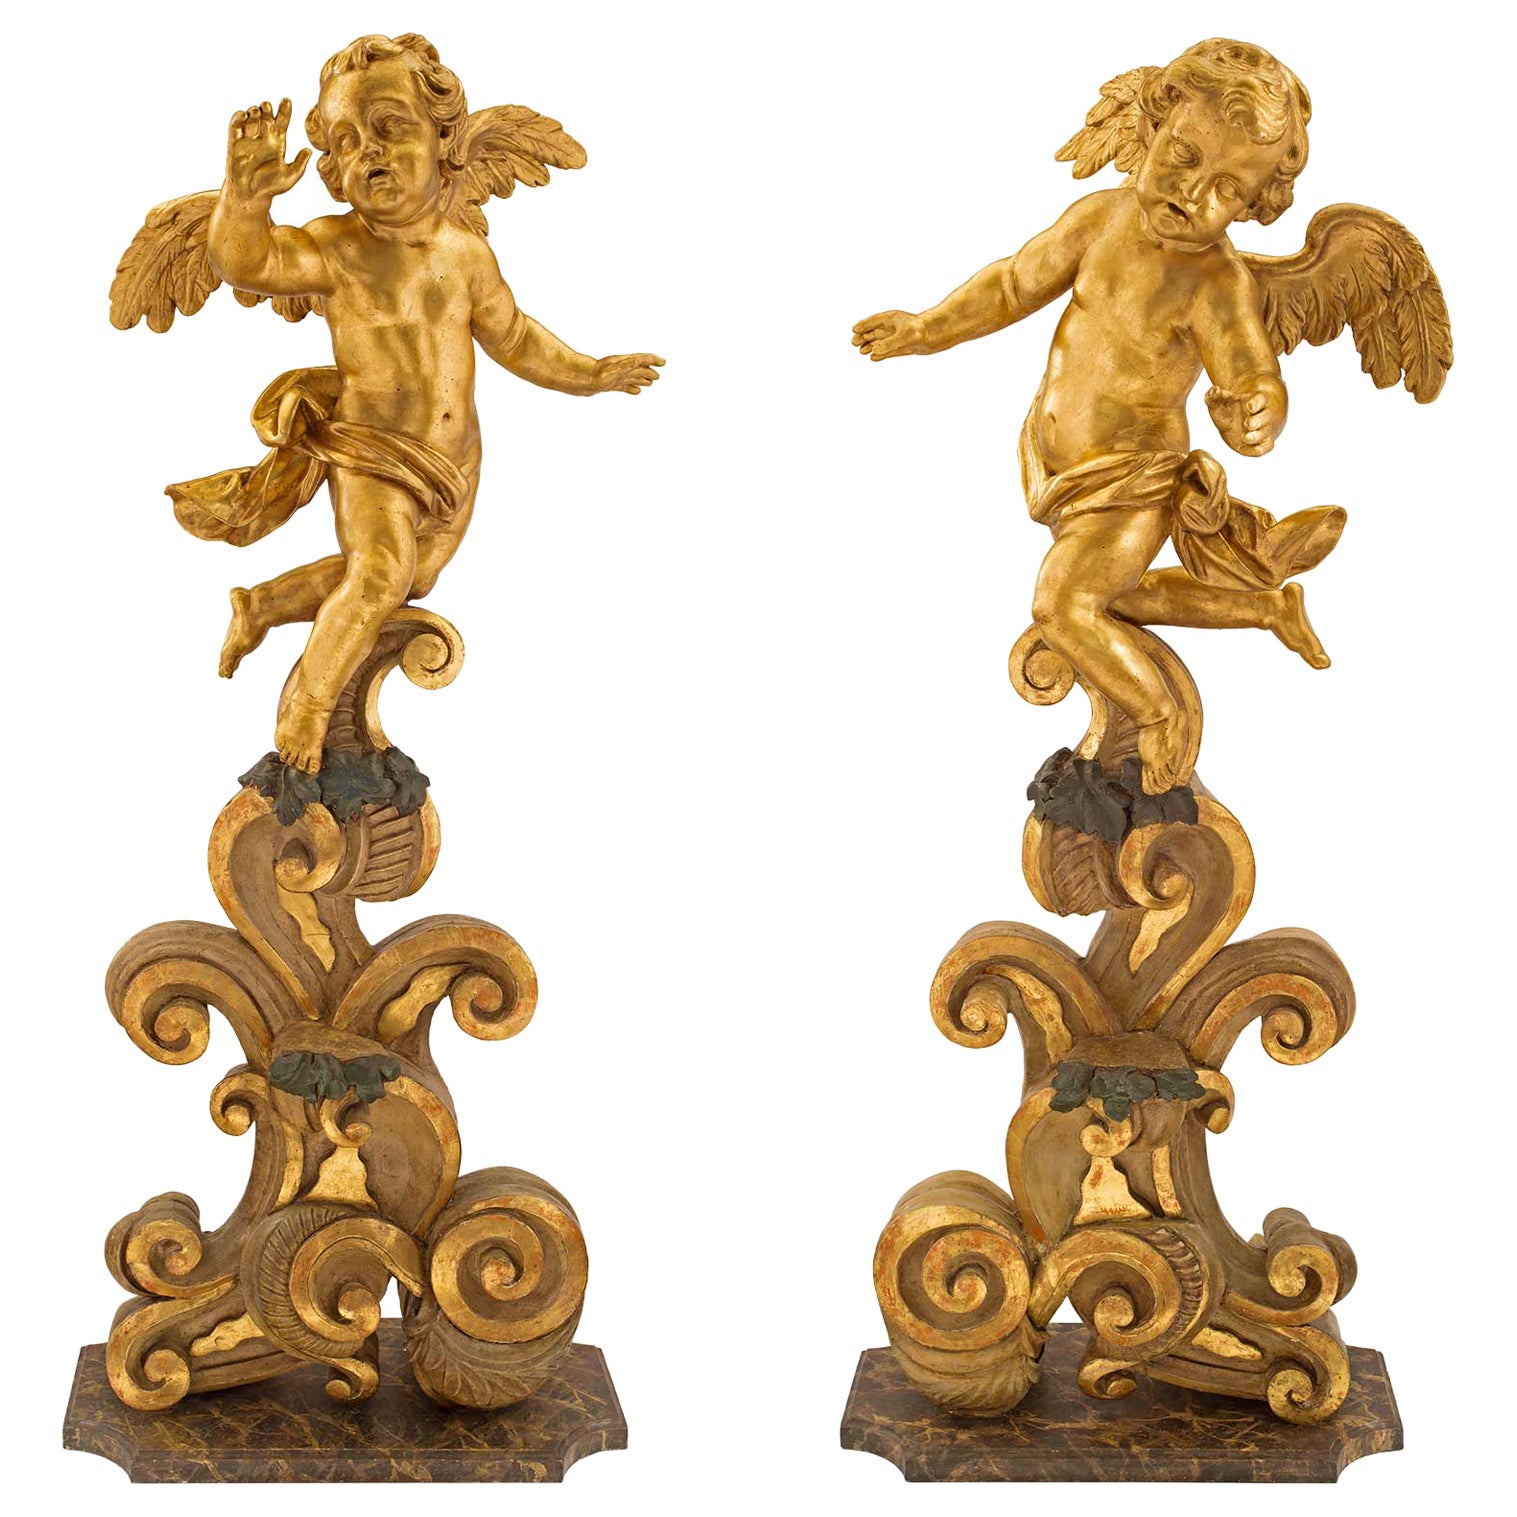 Statues de chérubins baroques italiennes du XVIIIe siècle en bois doré et polychrome